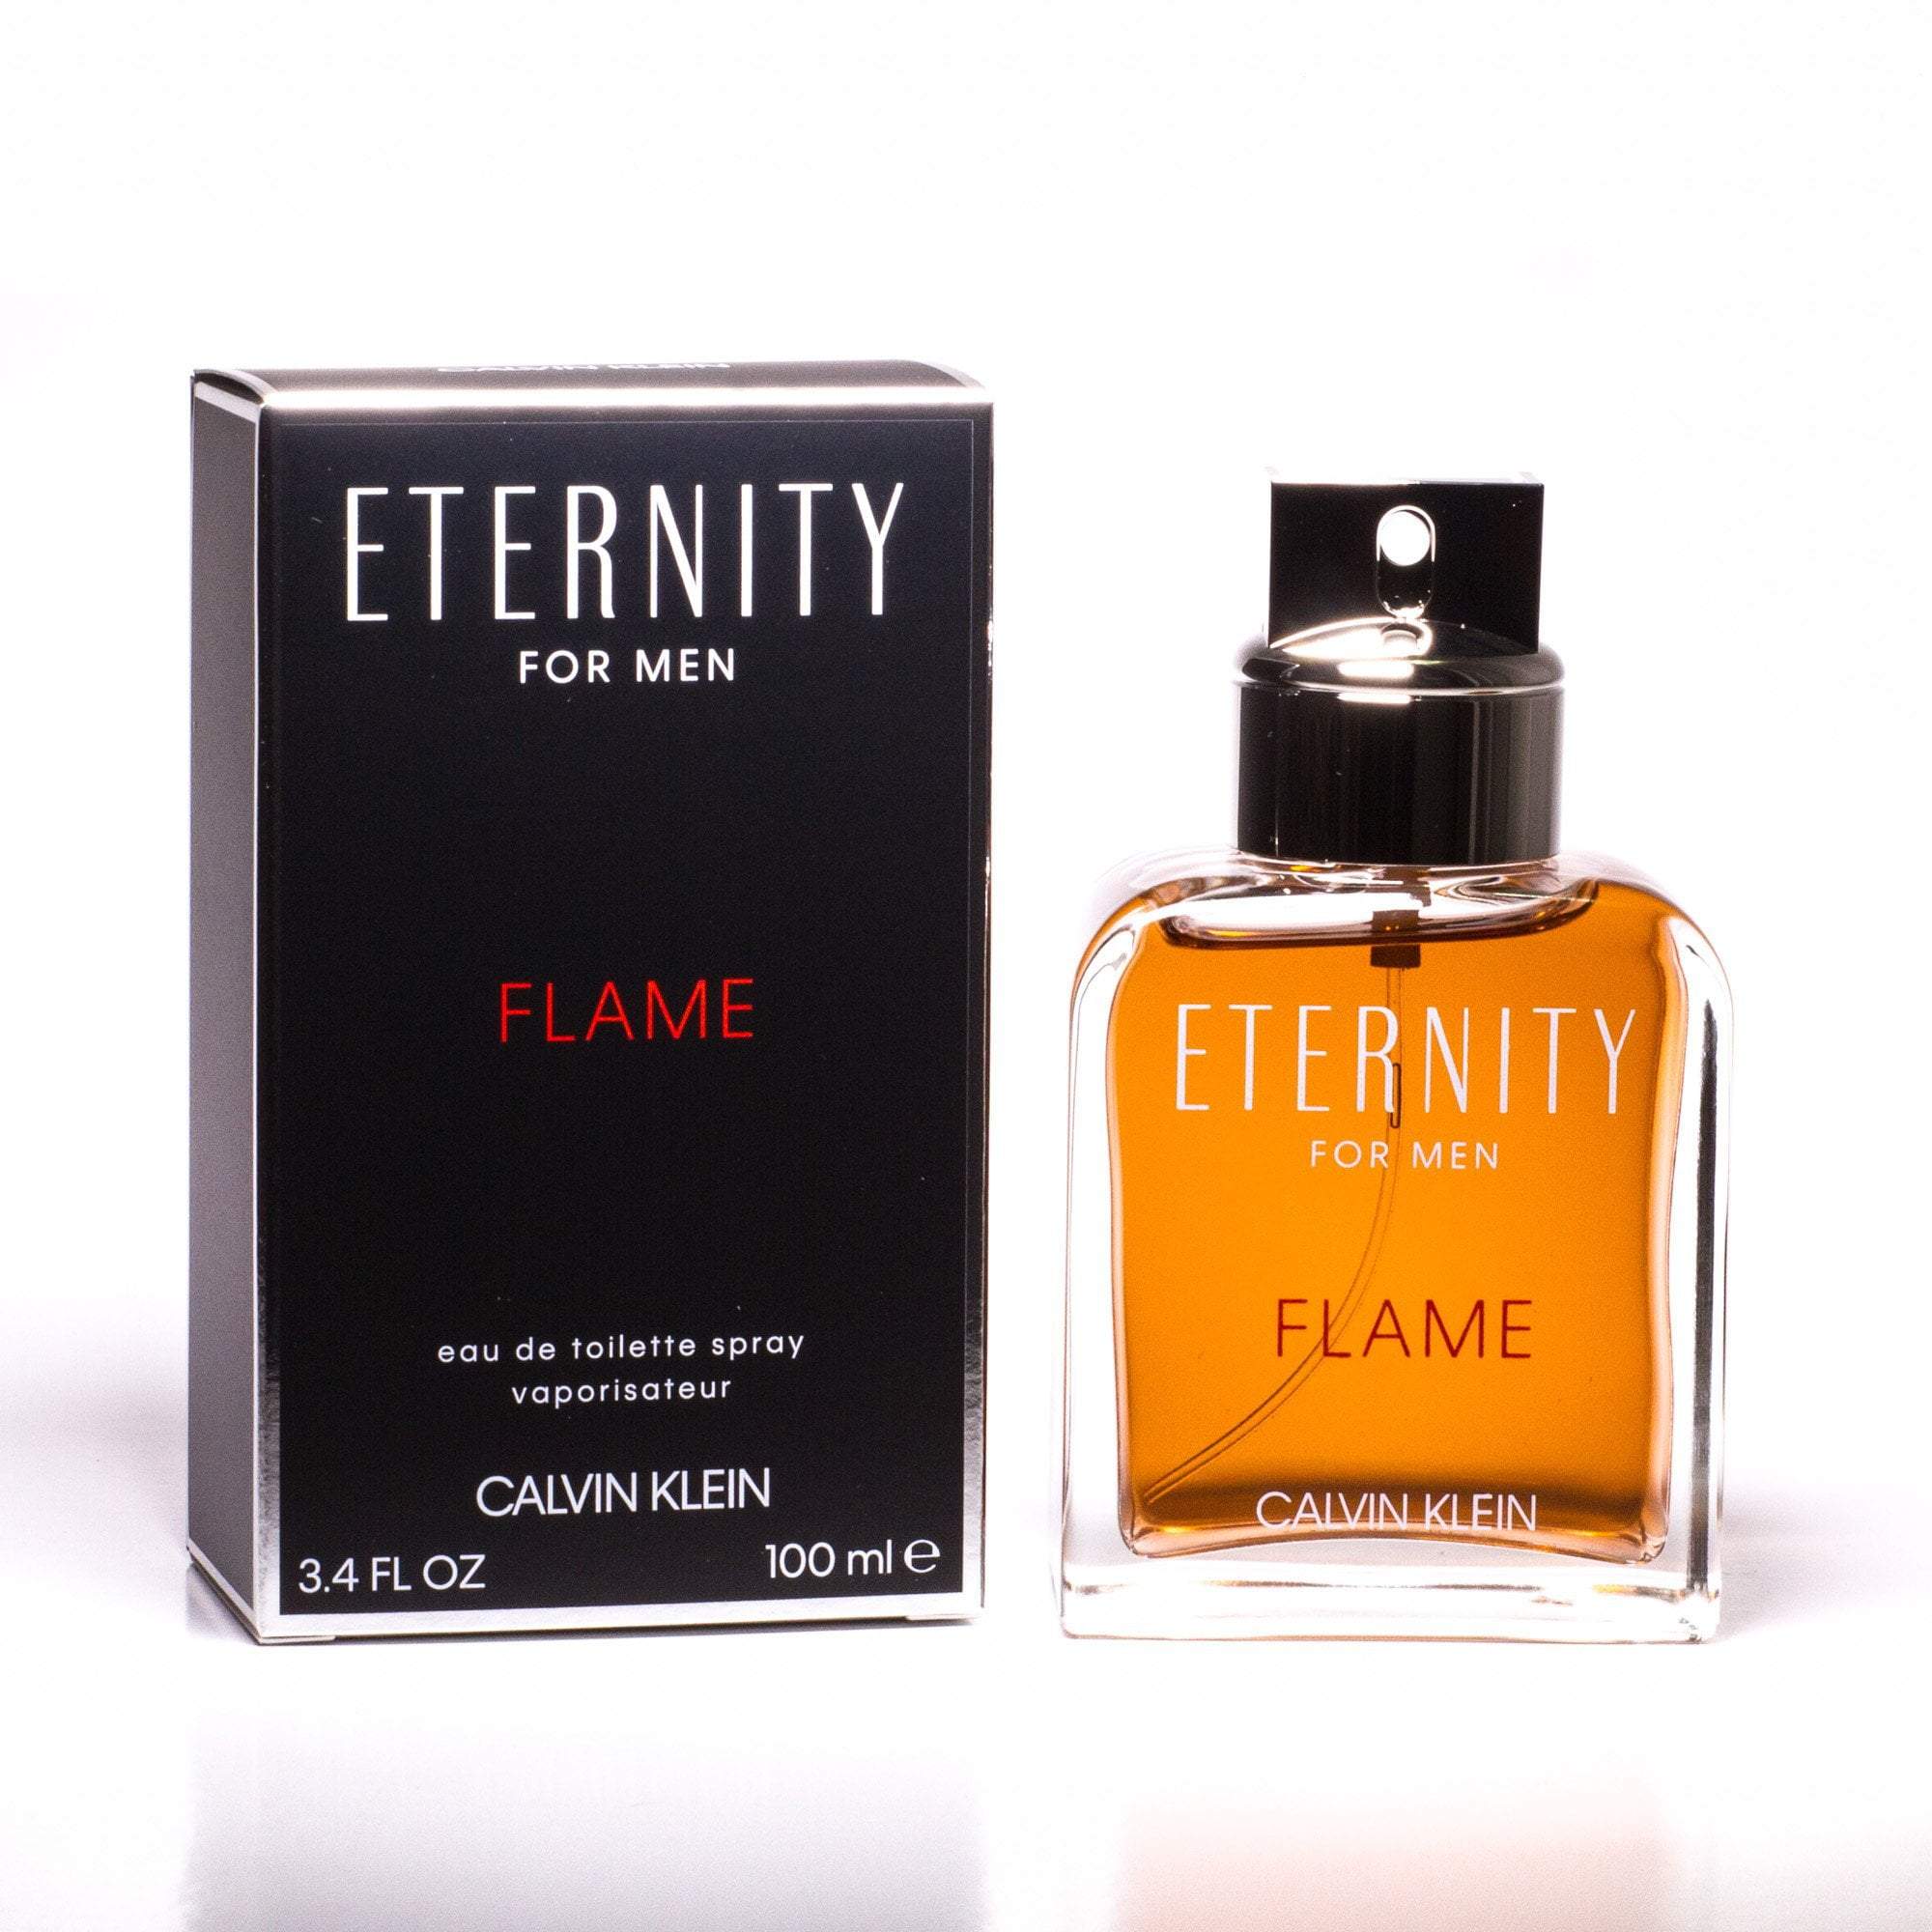 Flame Eau de Toilette for Perfumania – Spray Men by Klein Calvin